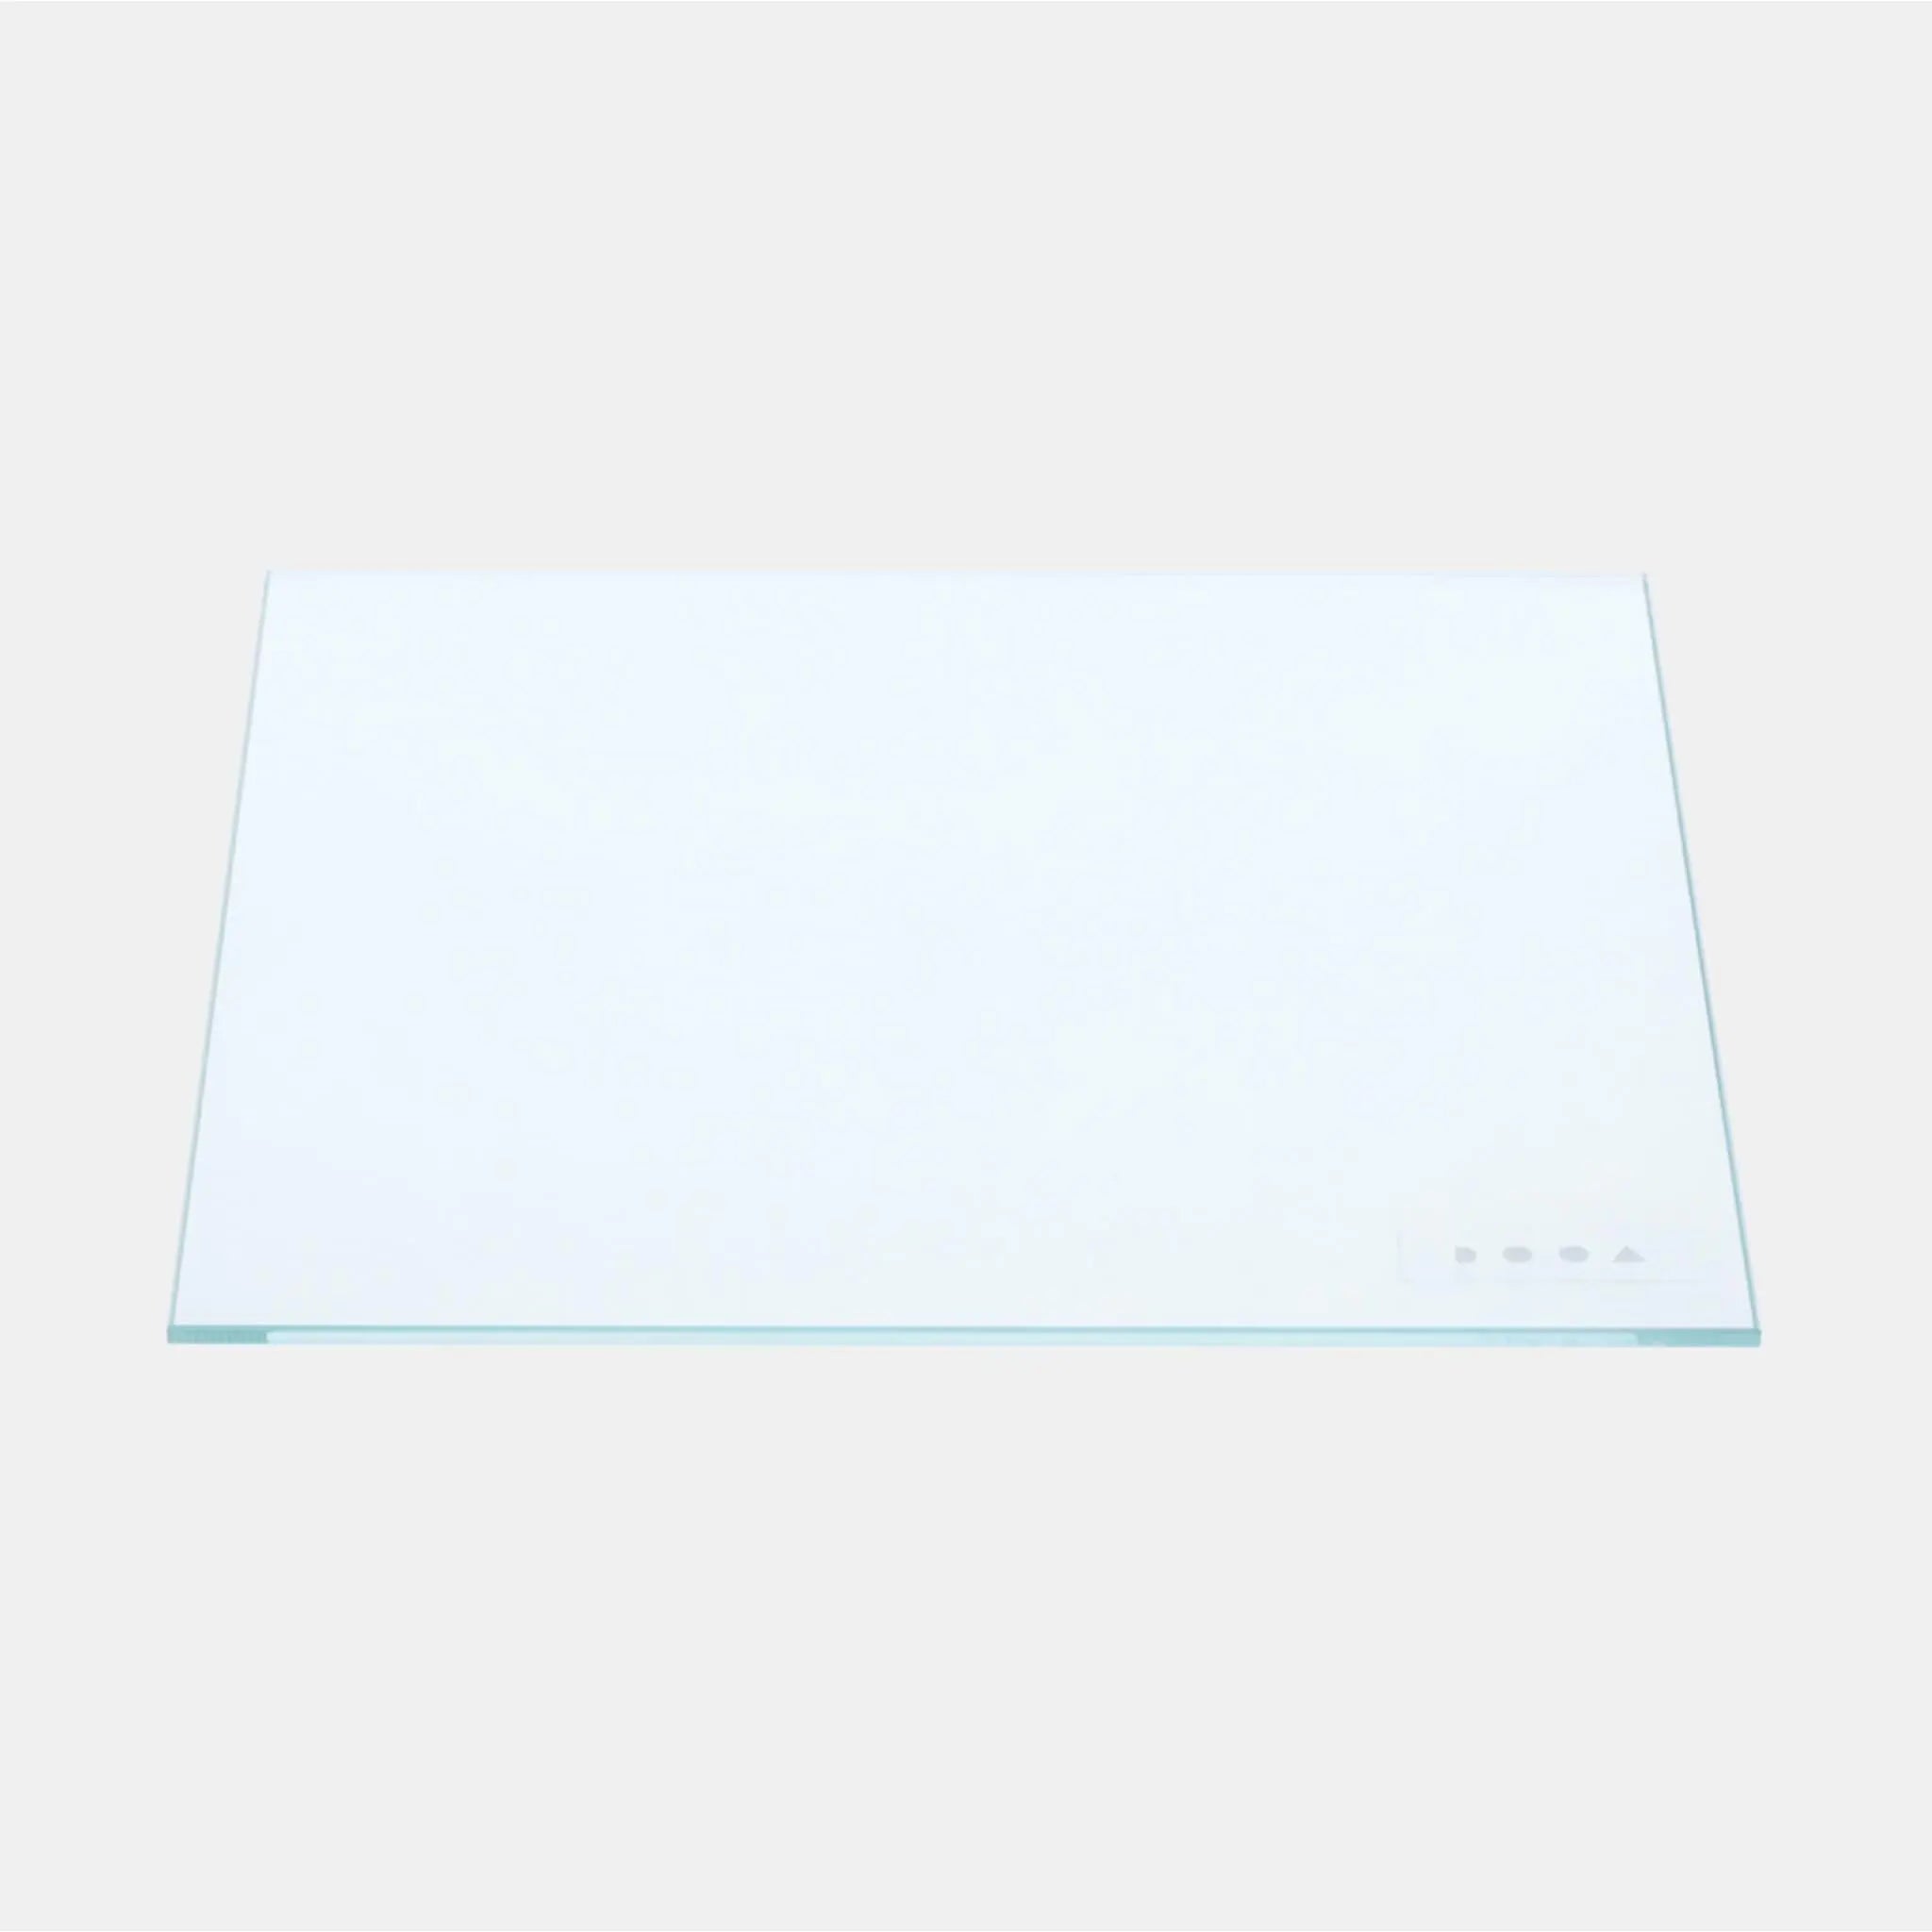 DOOA Neo Glass Cover 15x15cm - Aqua Essentials